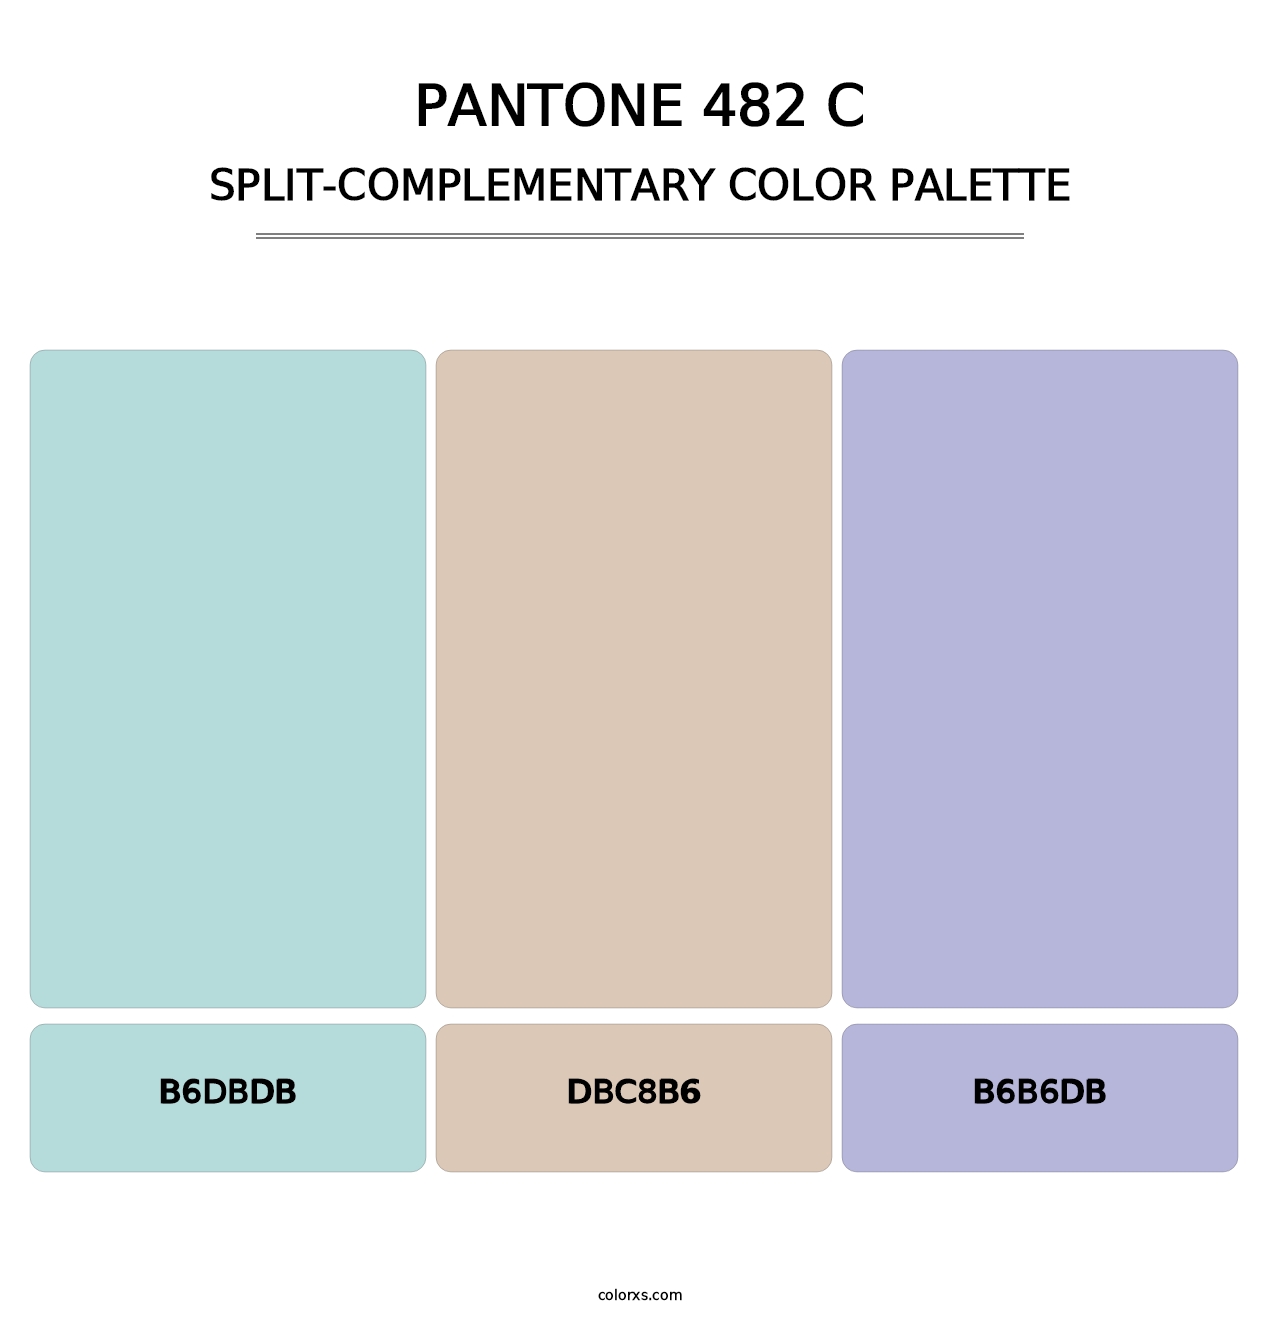 PANTONE 482 C - Split-Complementary Color Palette